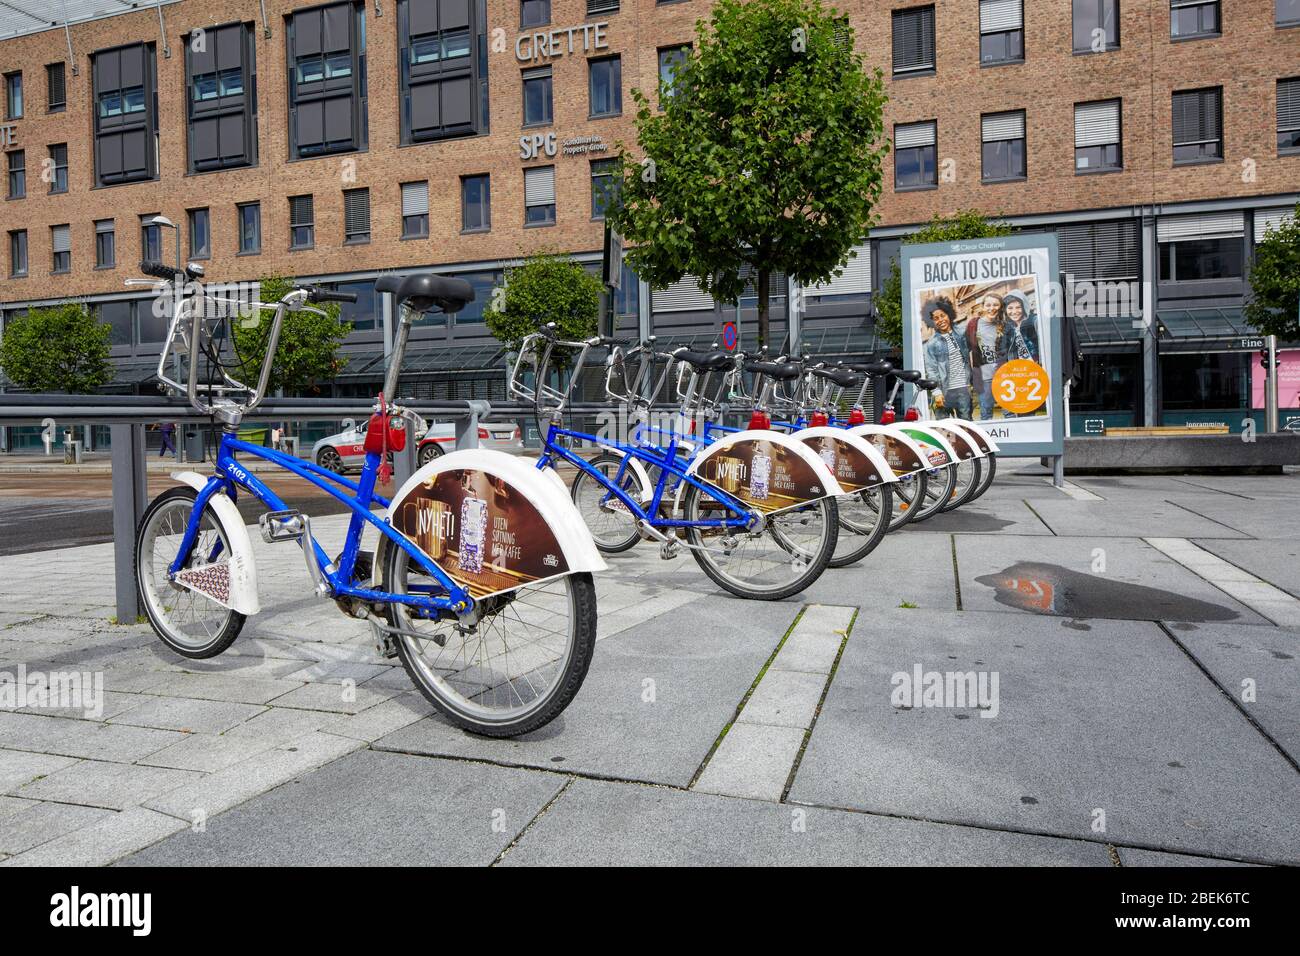 Programma di condivisione bici noleggio bici Bysykkel City Bikes a Oslo, Norvegia, Europa Foto Stock